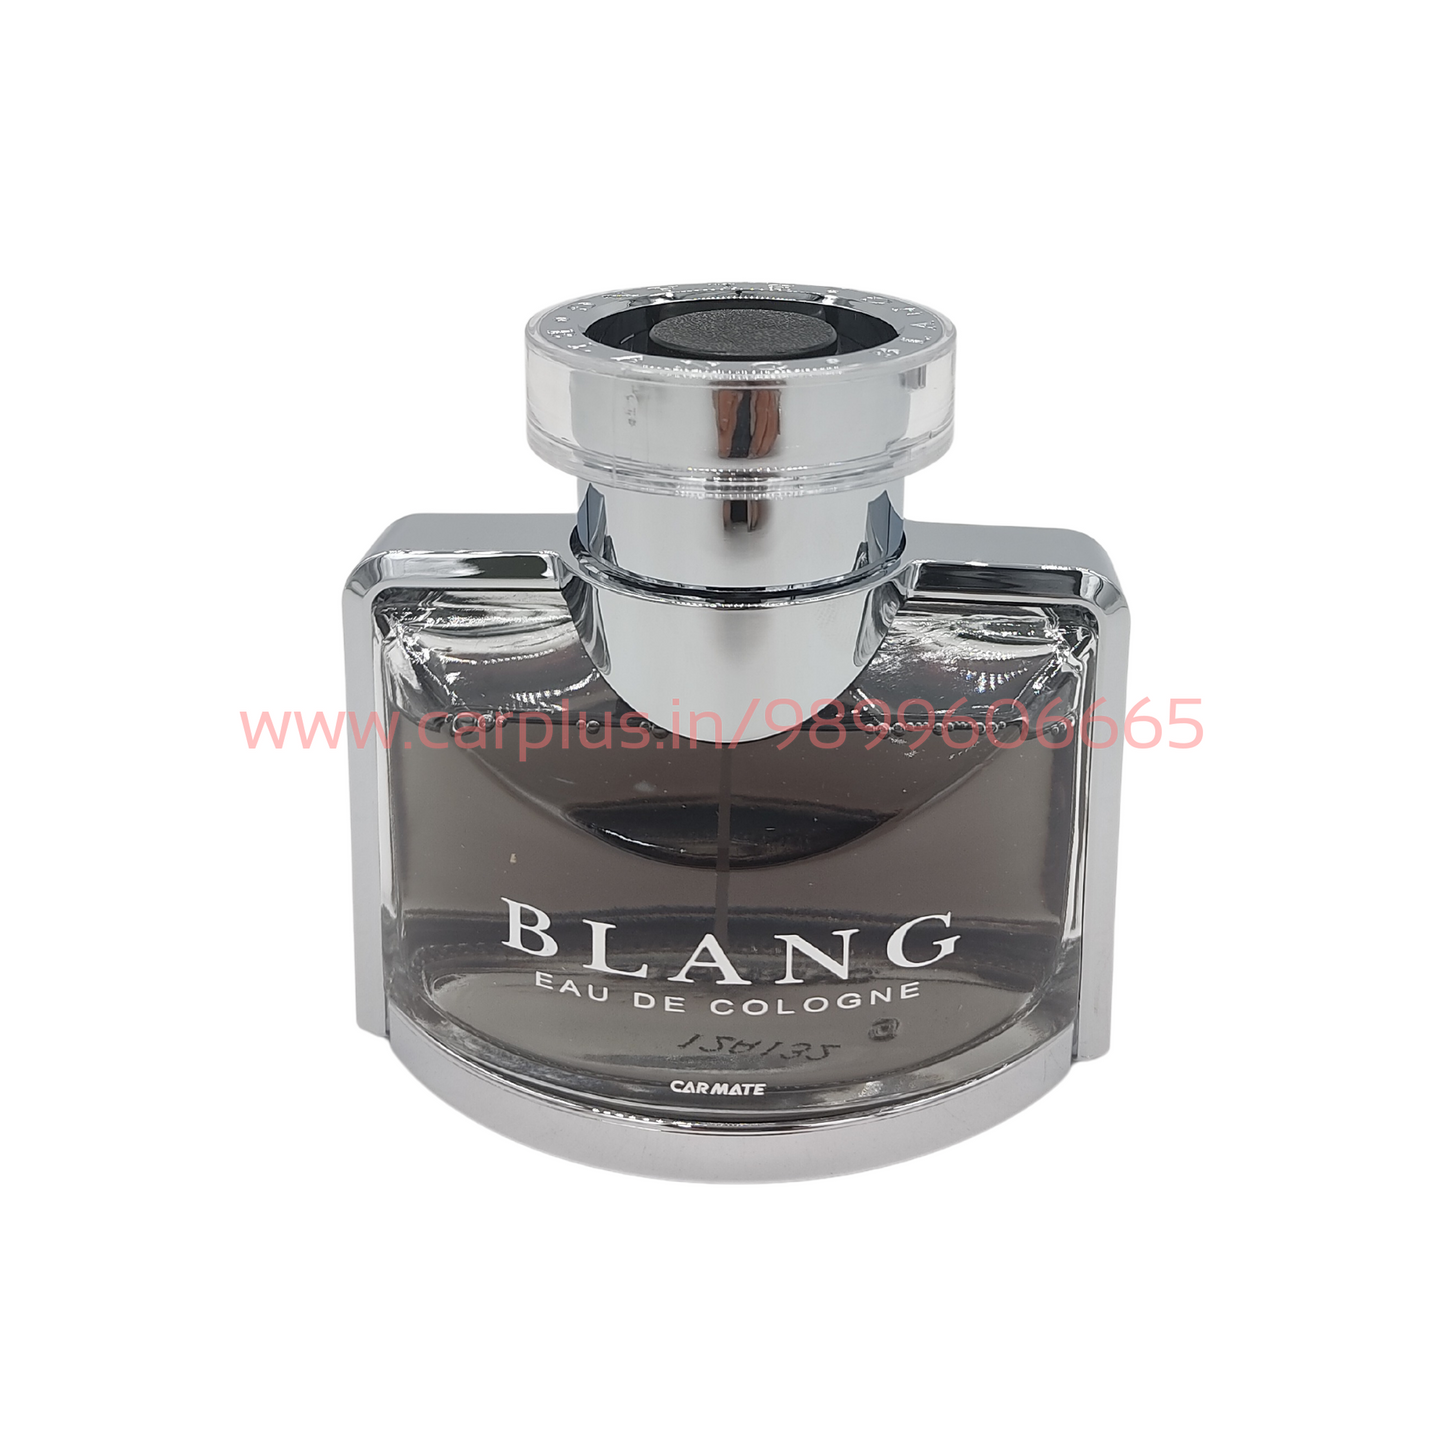 
                  
                    CARMATE Blang LS AC Perfume-A/C PERFUME-CARMATE-BLANG-BVLGA TYPE BK (L32)-CARPLUS
                  
                